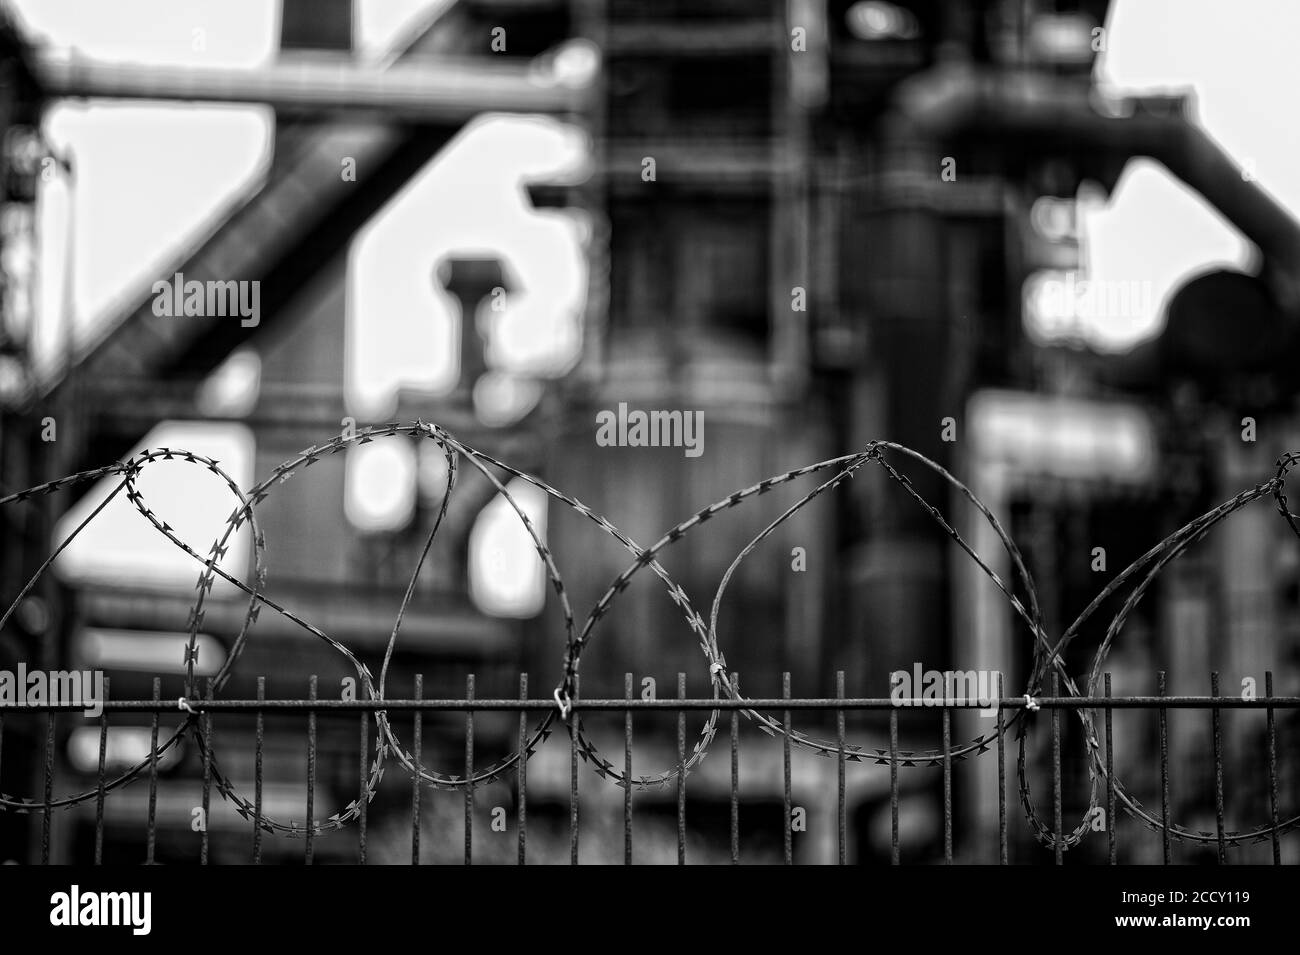 Recinzione a filo spinato, ex fabbrica di acciaio Phoenix West, Hoerde, Dortmund, zona Ruhr, Nord Reno-Westfalia, Germania Foto Stock